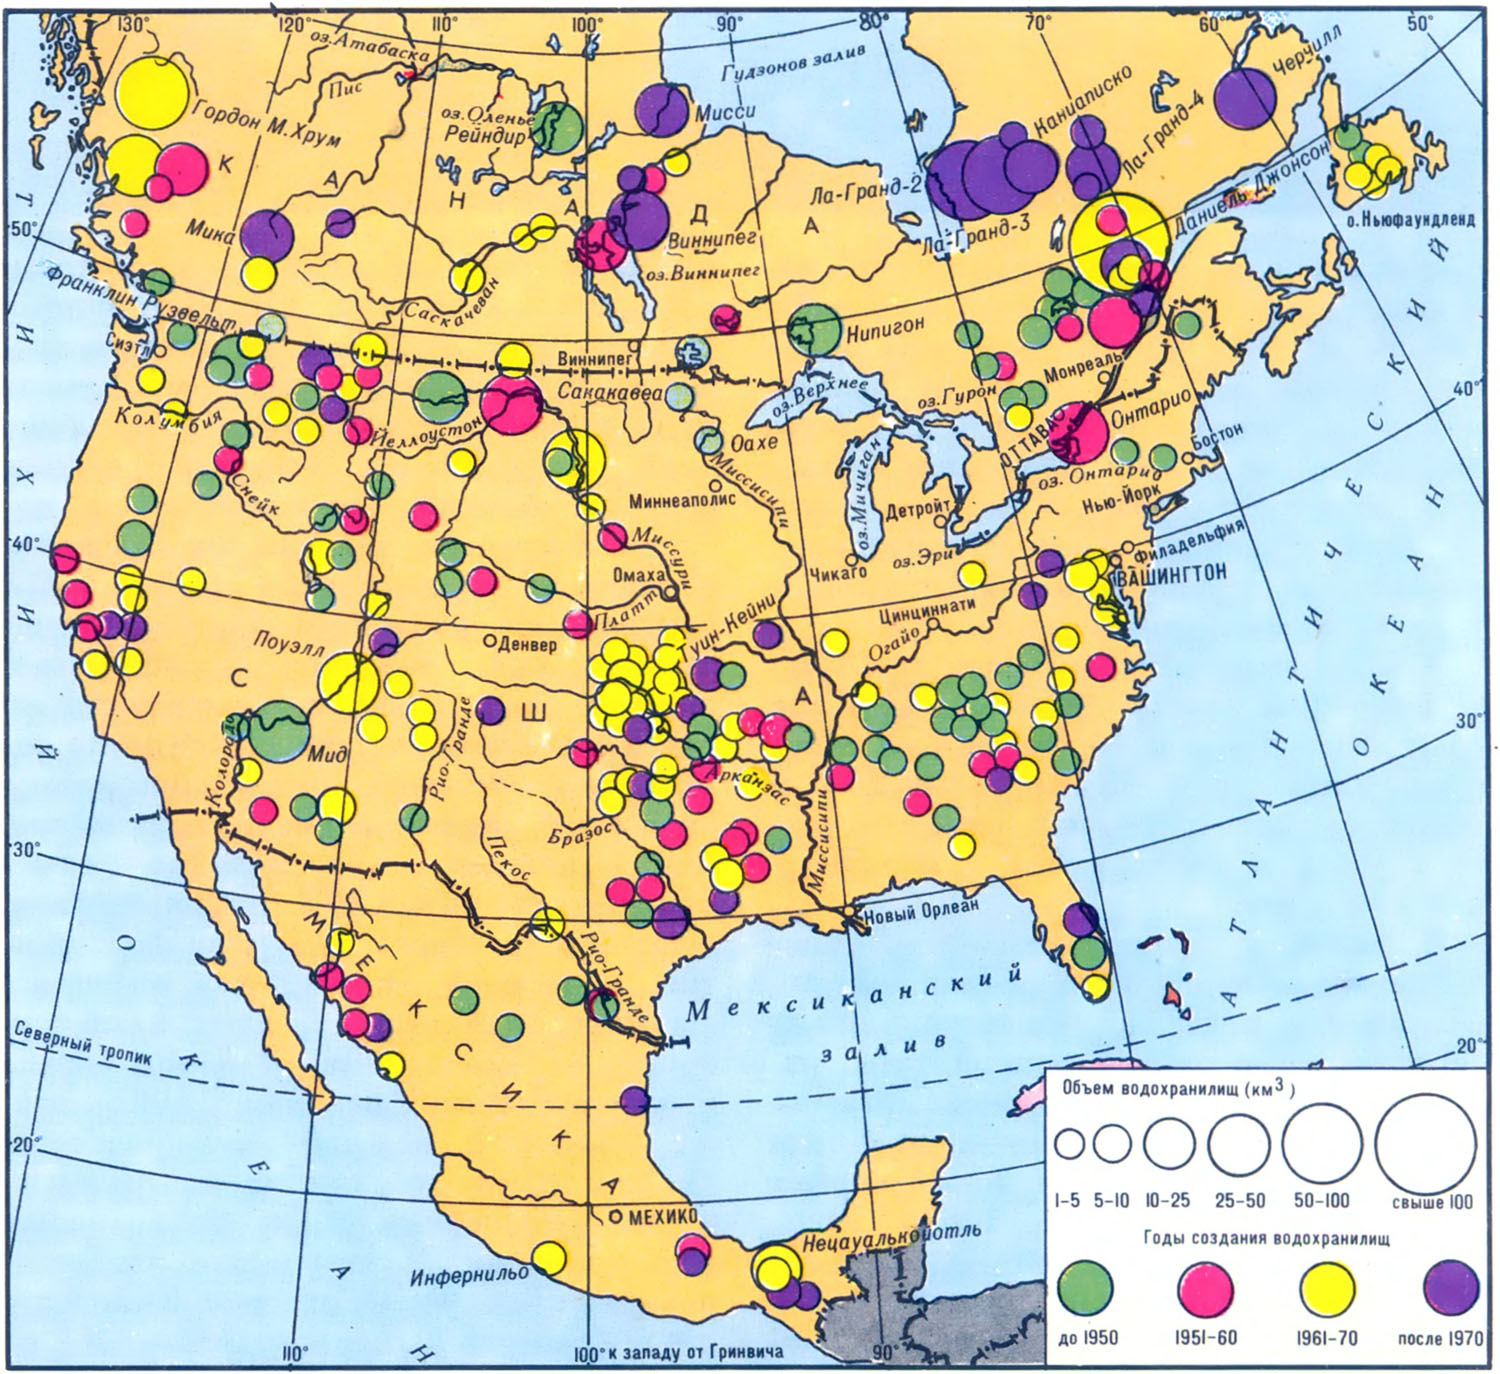 Главные полезные ископаемые сша. Карта промышленности Северной Америки. Основные полезные ископаемые США на карте. Карта полезных ископаемых США И Канады. Полезные ископаемые Северной Америки на карте.